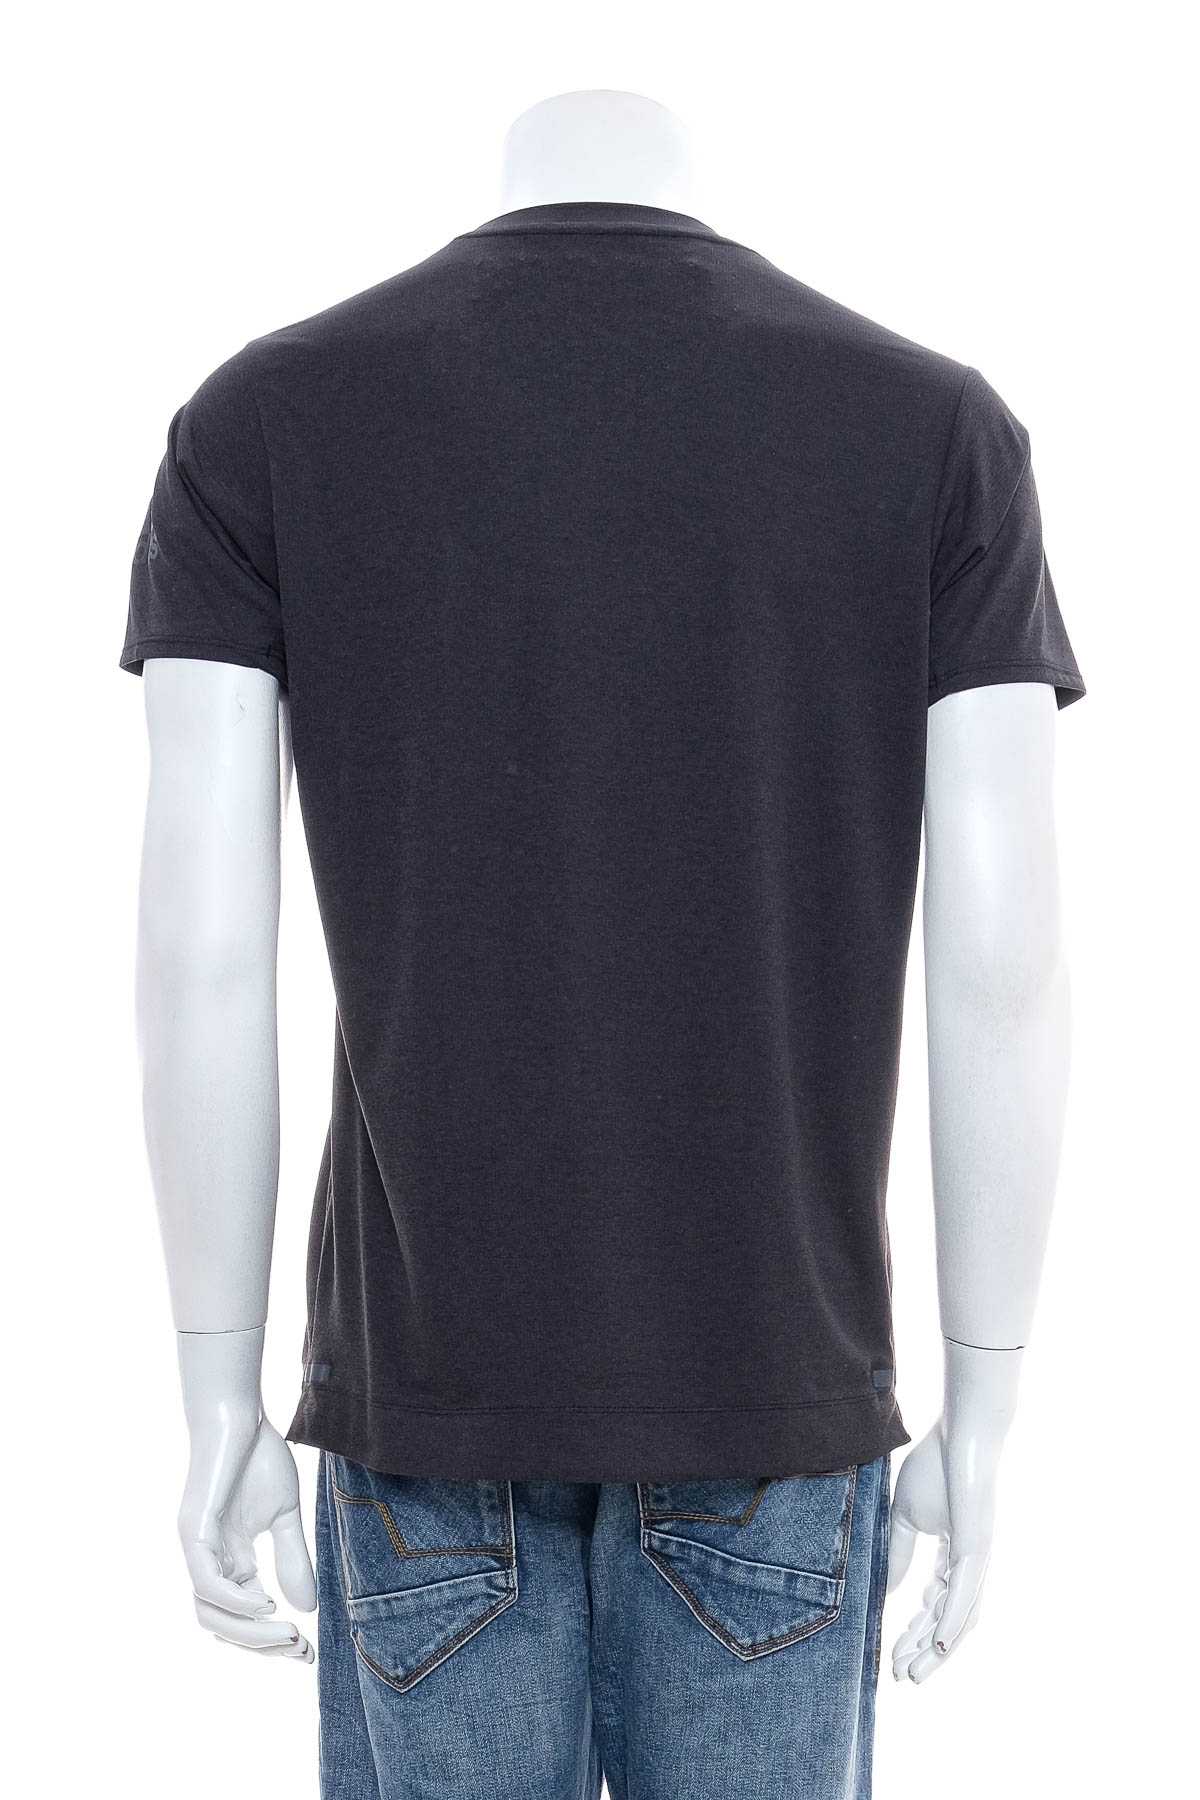 Ανδρικό μπλουζάκι - Adidas climachill - 1